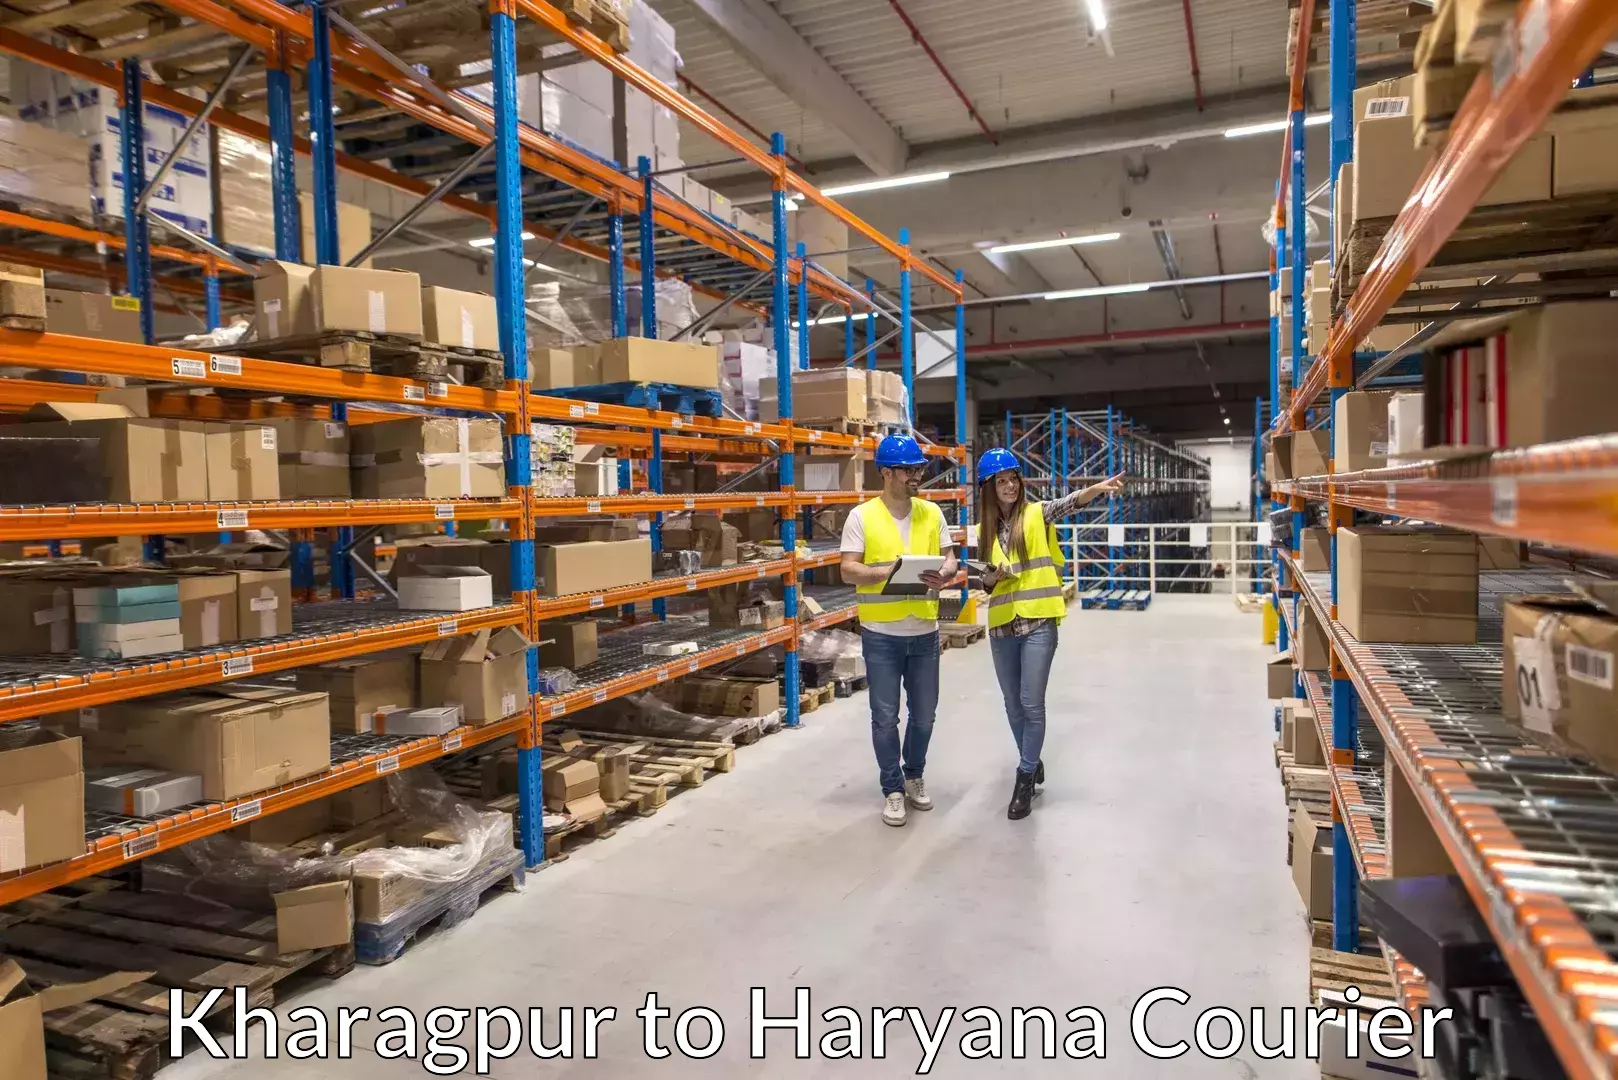 Baggage shipping experts Kharagpur to Bilaspur Haryana